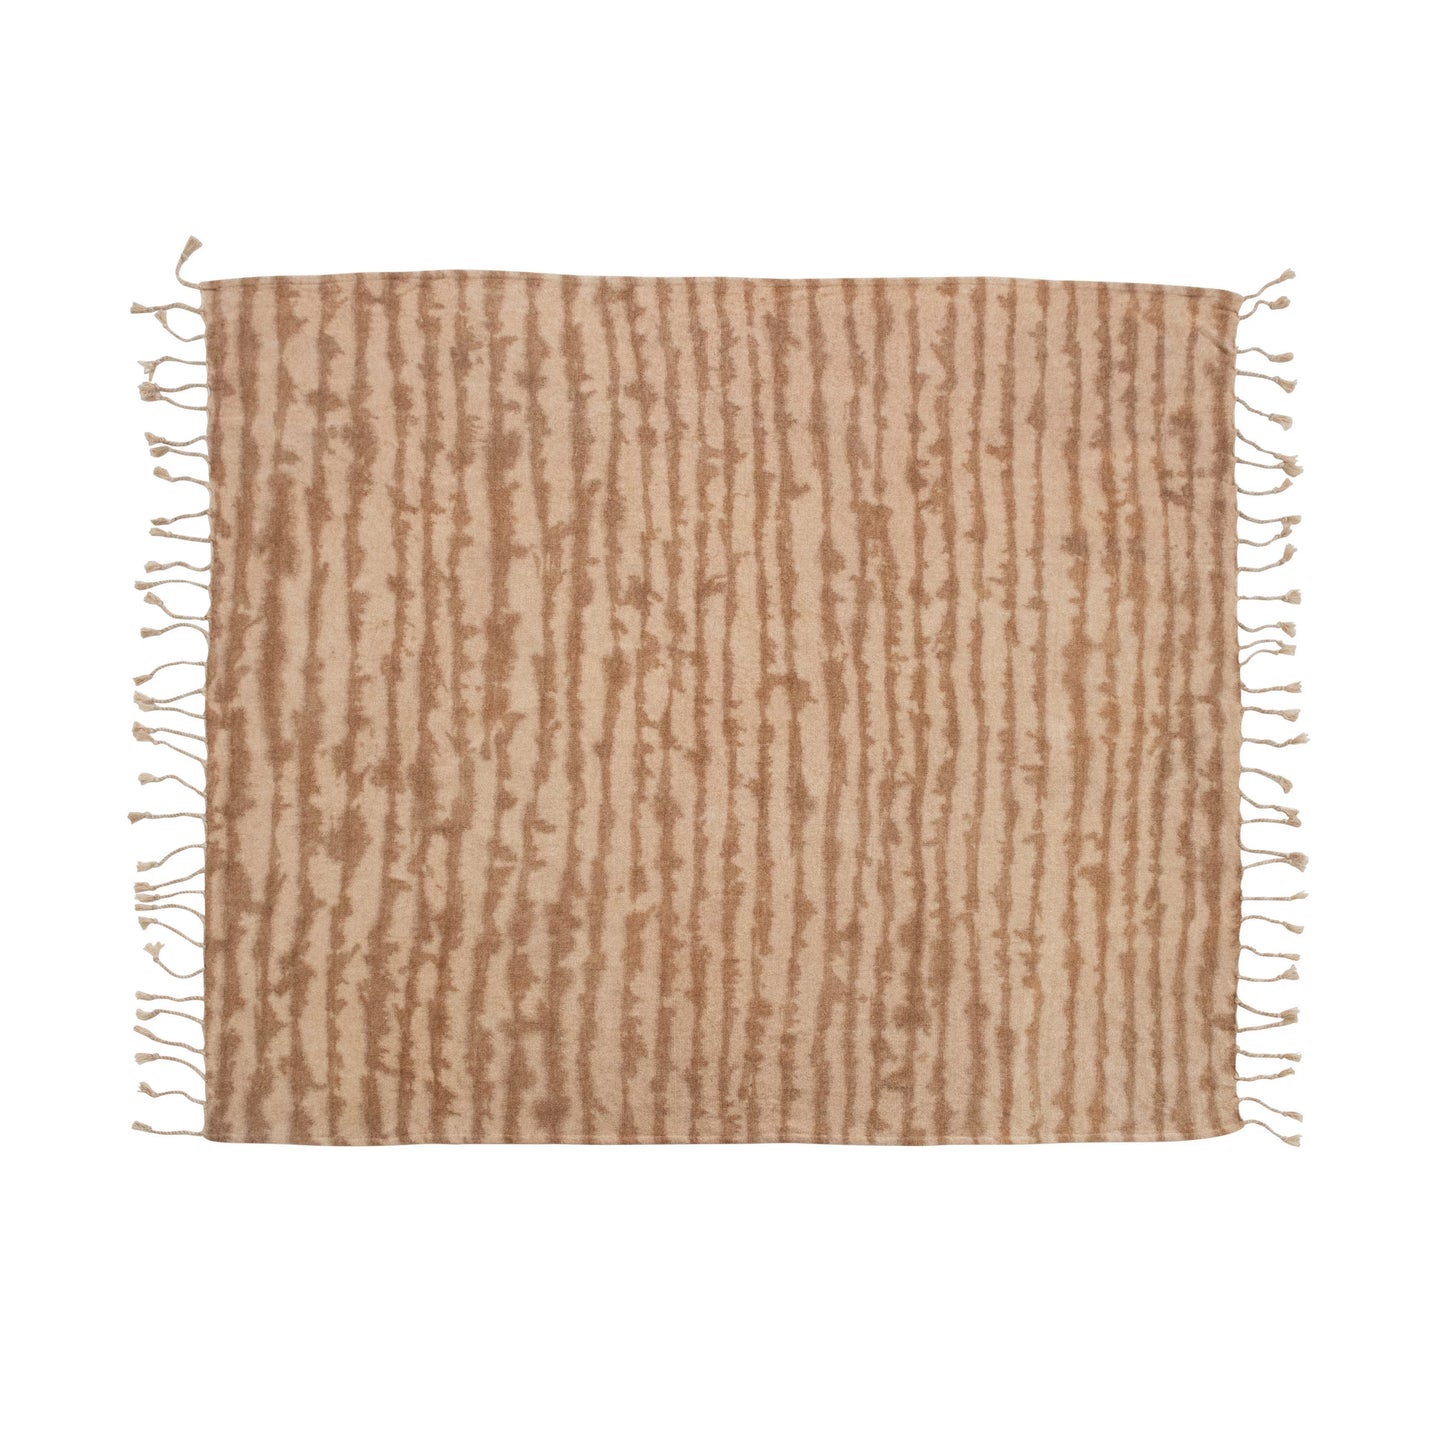 Bloomingville - Cotton Blend Tie-Dye Throw Blanket with Tassels - Brown